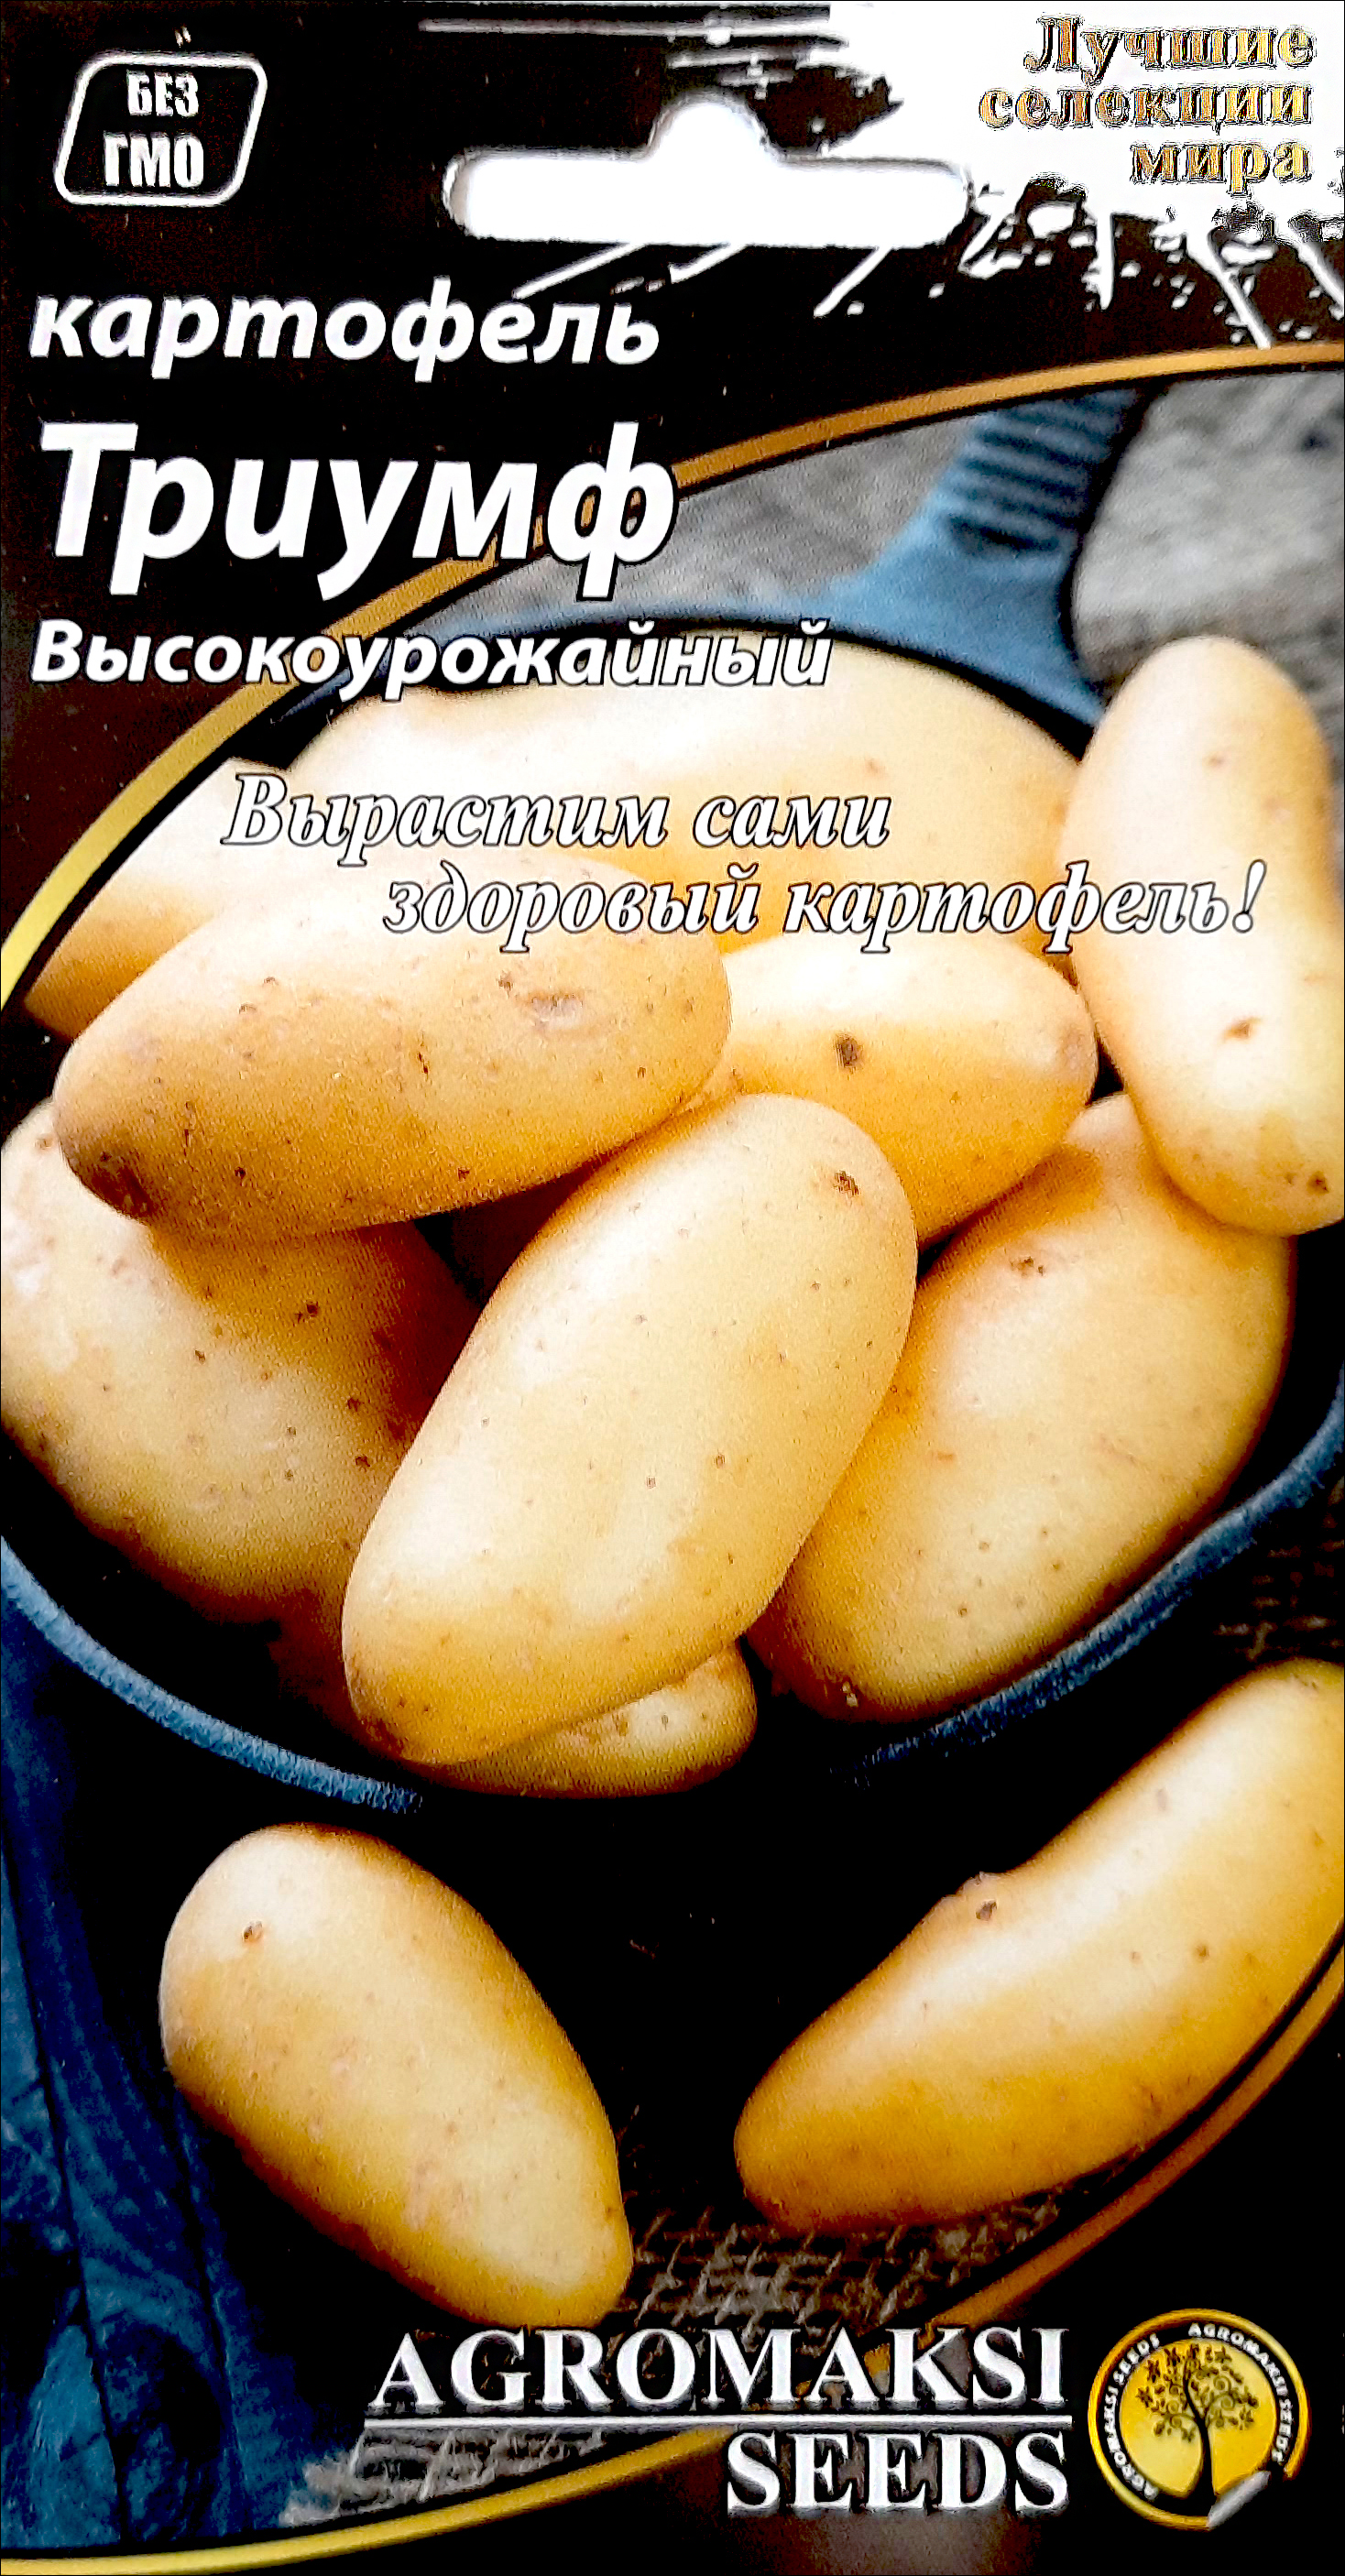 Семена картофеля на посадку по выгодной цене, купить в ROZETKA. Заходите -мы всегда Вам рады.